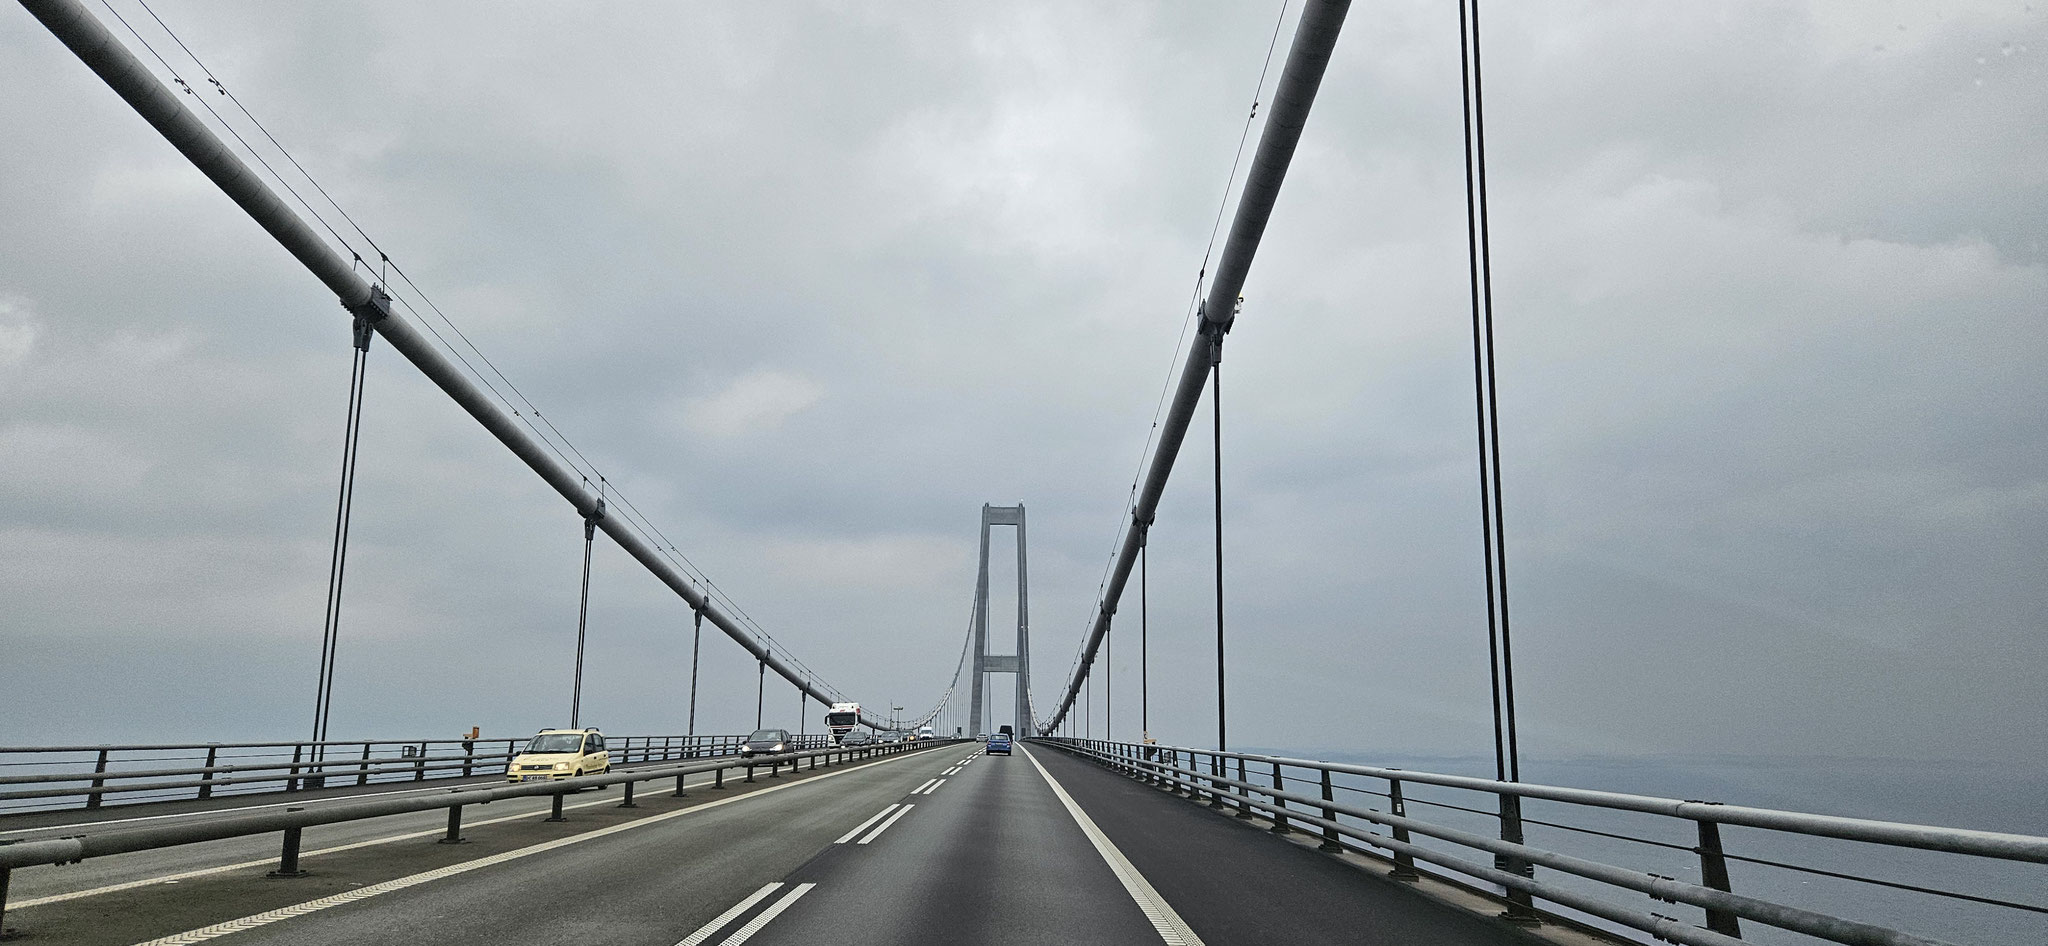 Nach der Brücke folgt die Maut von DKK 620.00...